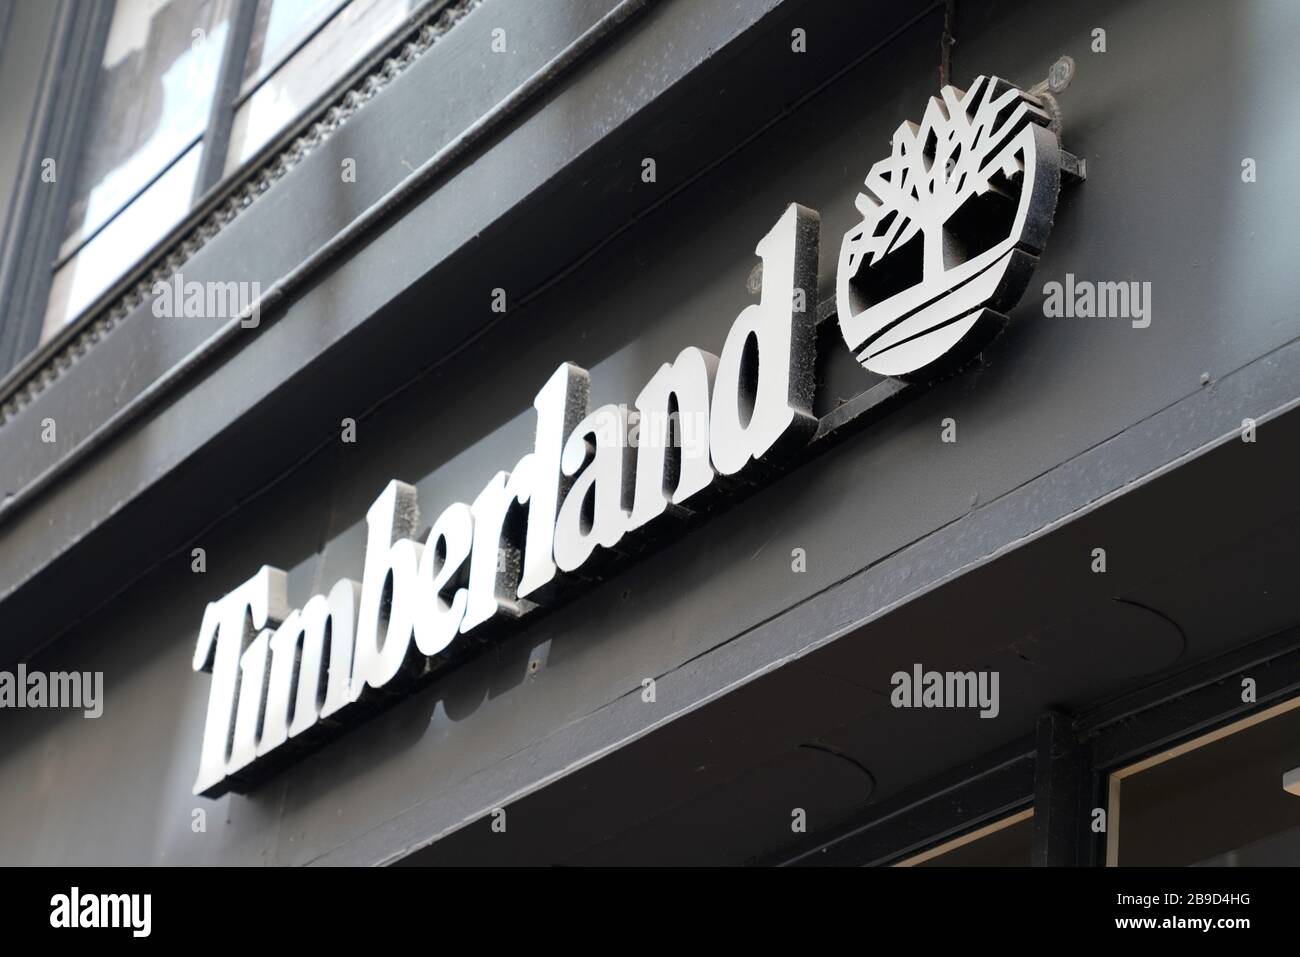 Bordeaux , Aquitaine / Francia - 09 18 2019 : Timberland negozio in città strada negozio segno Foto Stock